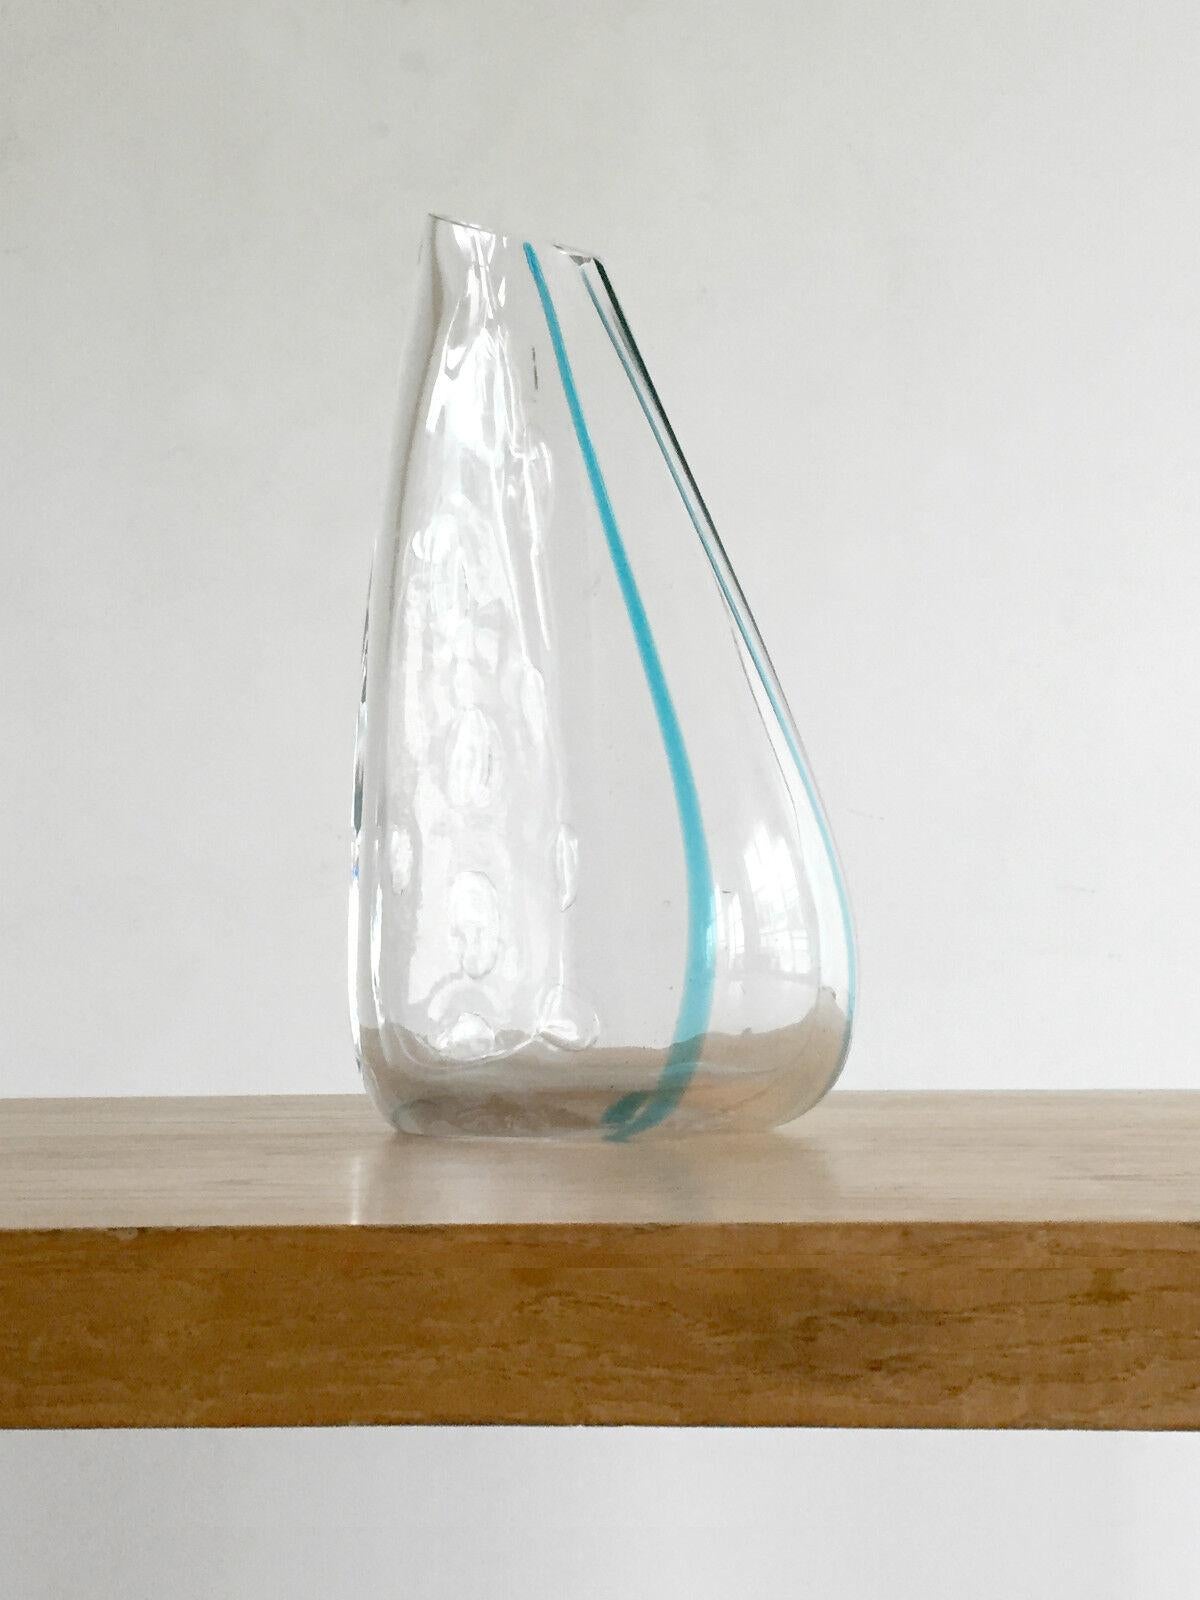 Un énorme et sculptural vase post-moderniste, Free Form, en verre soufflé épais avec des bulles ovoïdes et 2 lignes turquoise, Venini, Murano, Italie 1980-1990.